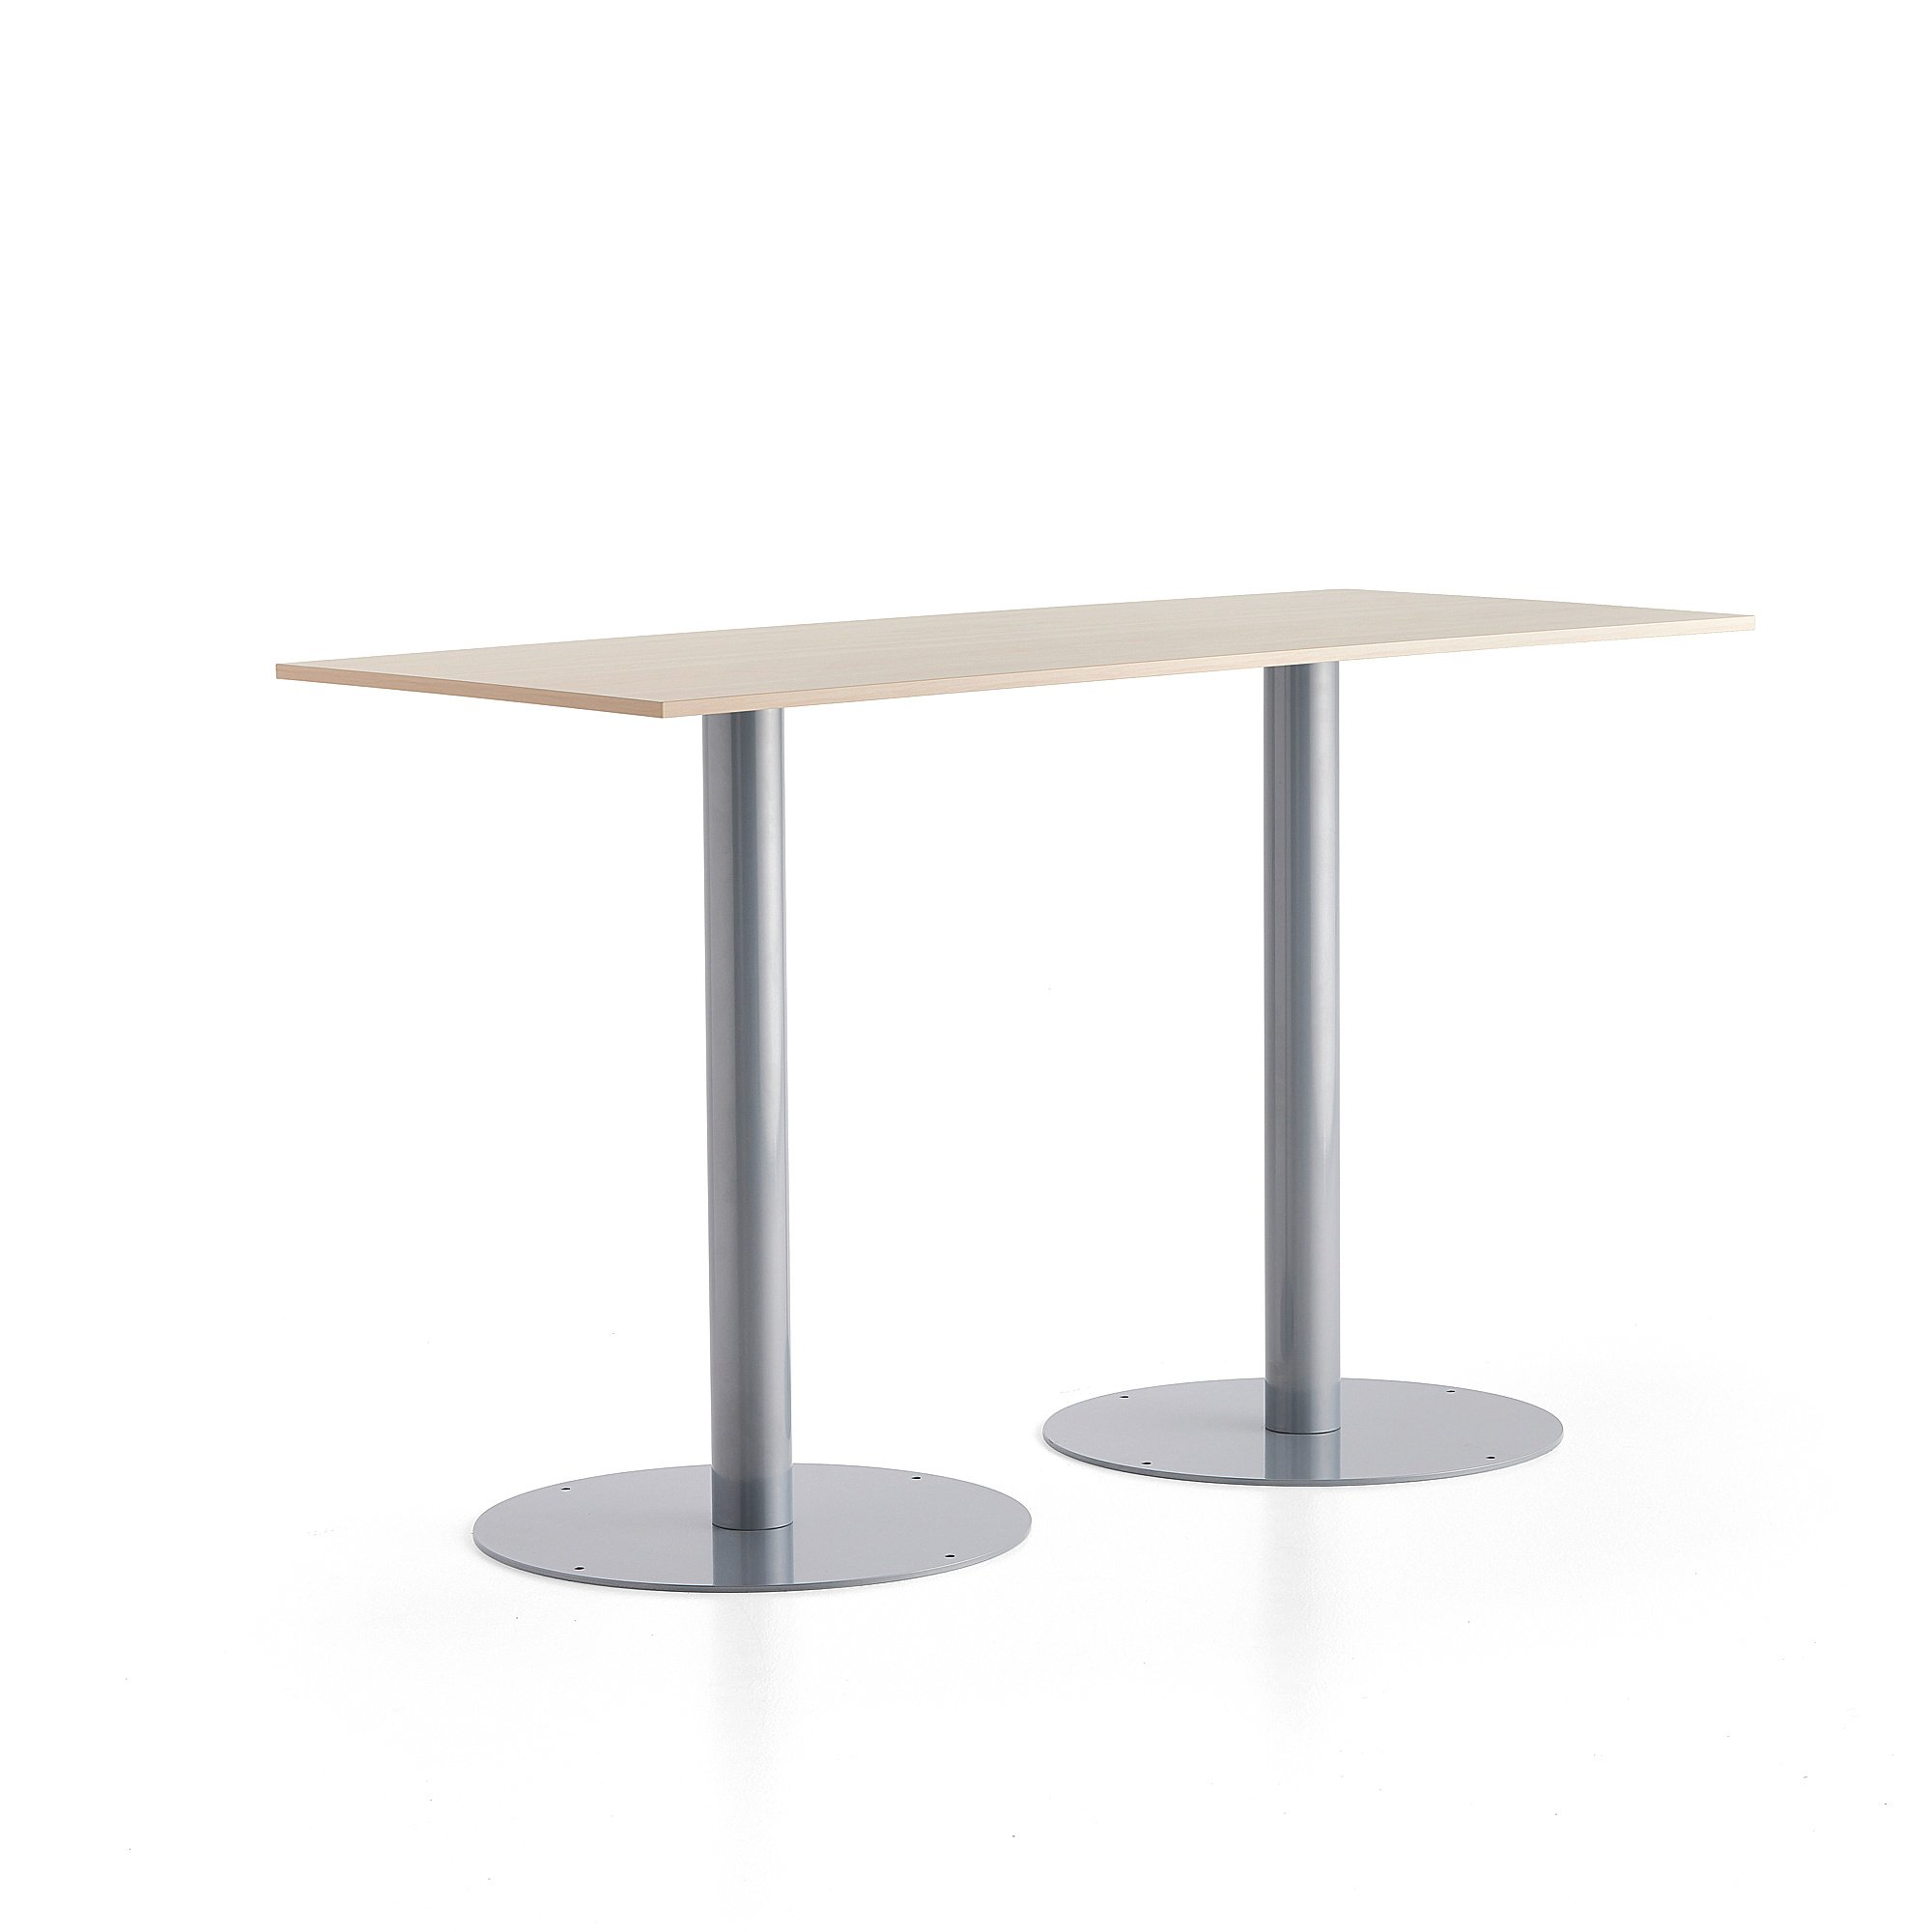 Barový stůl ALVA, 1800x800x1100 mm, stříbrná, bříza